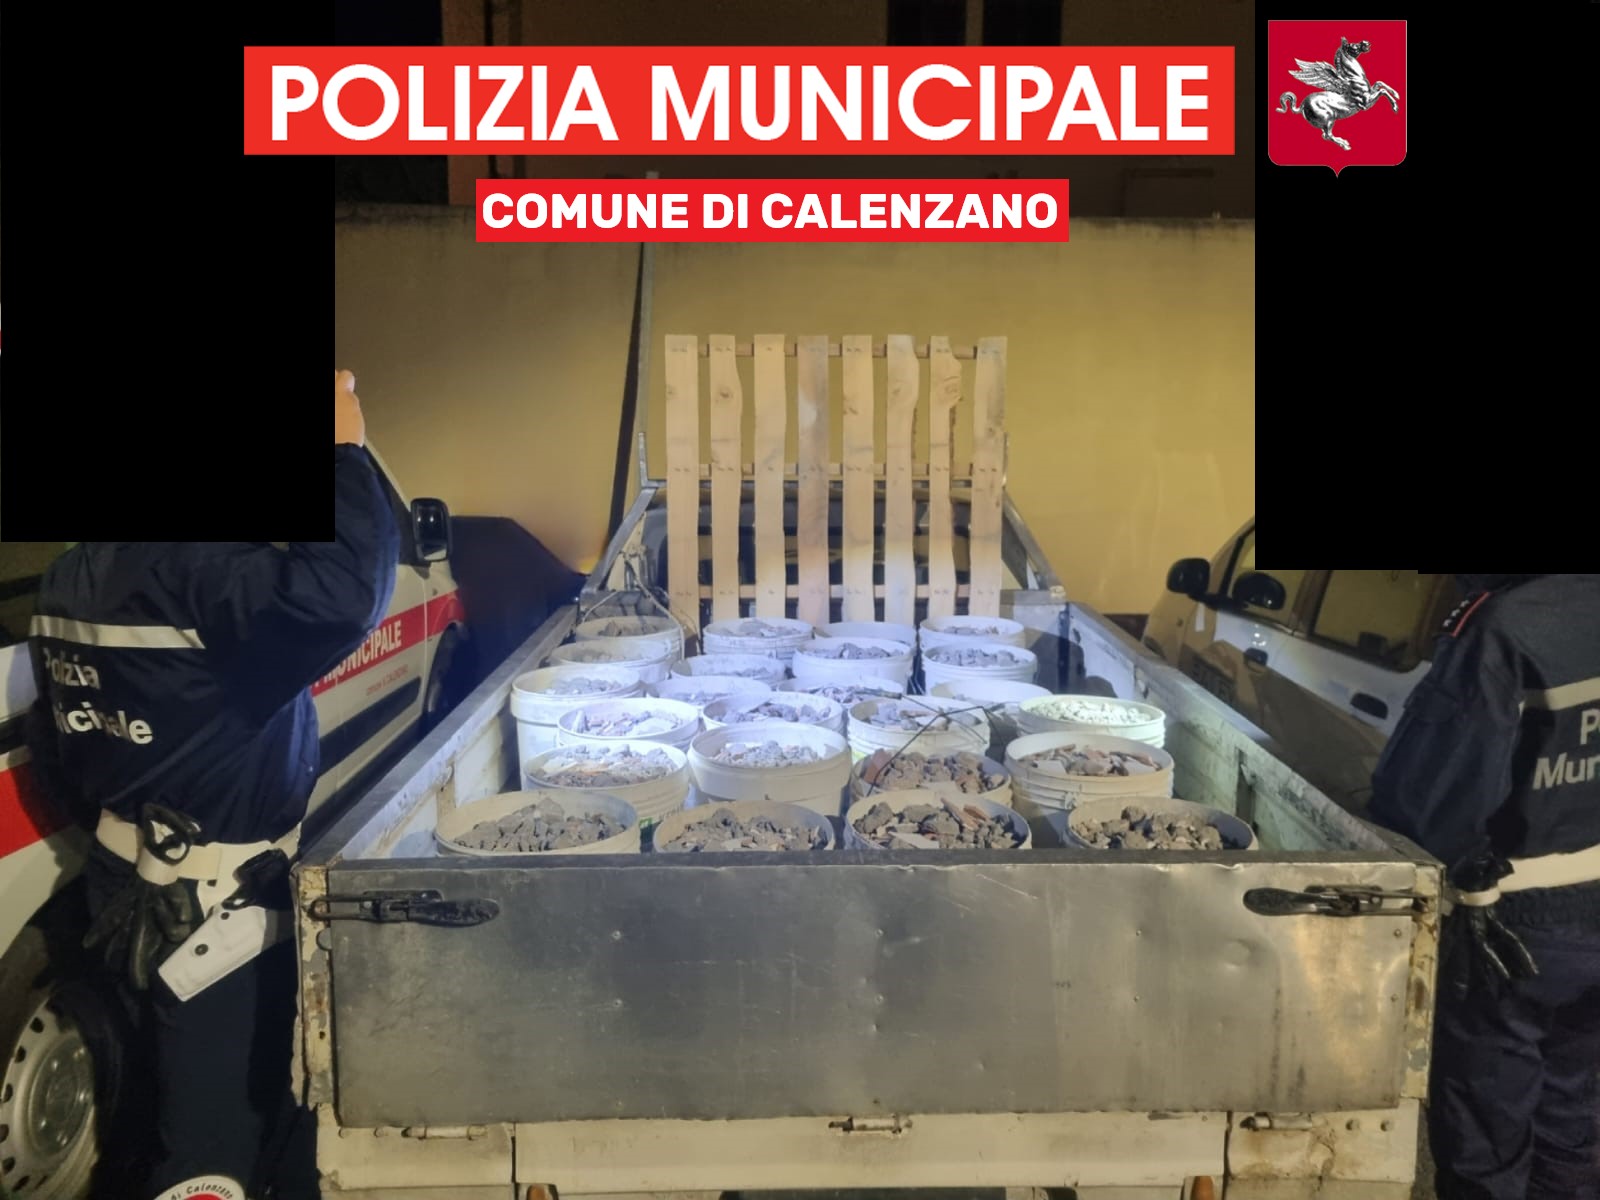 Trasporto illecito di rifiuti (Fonte foto Comune di Calenzano Polizia Municipale)